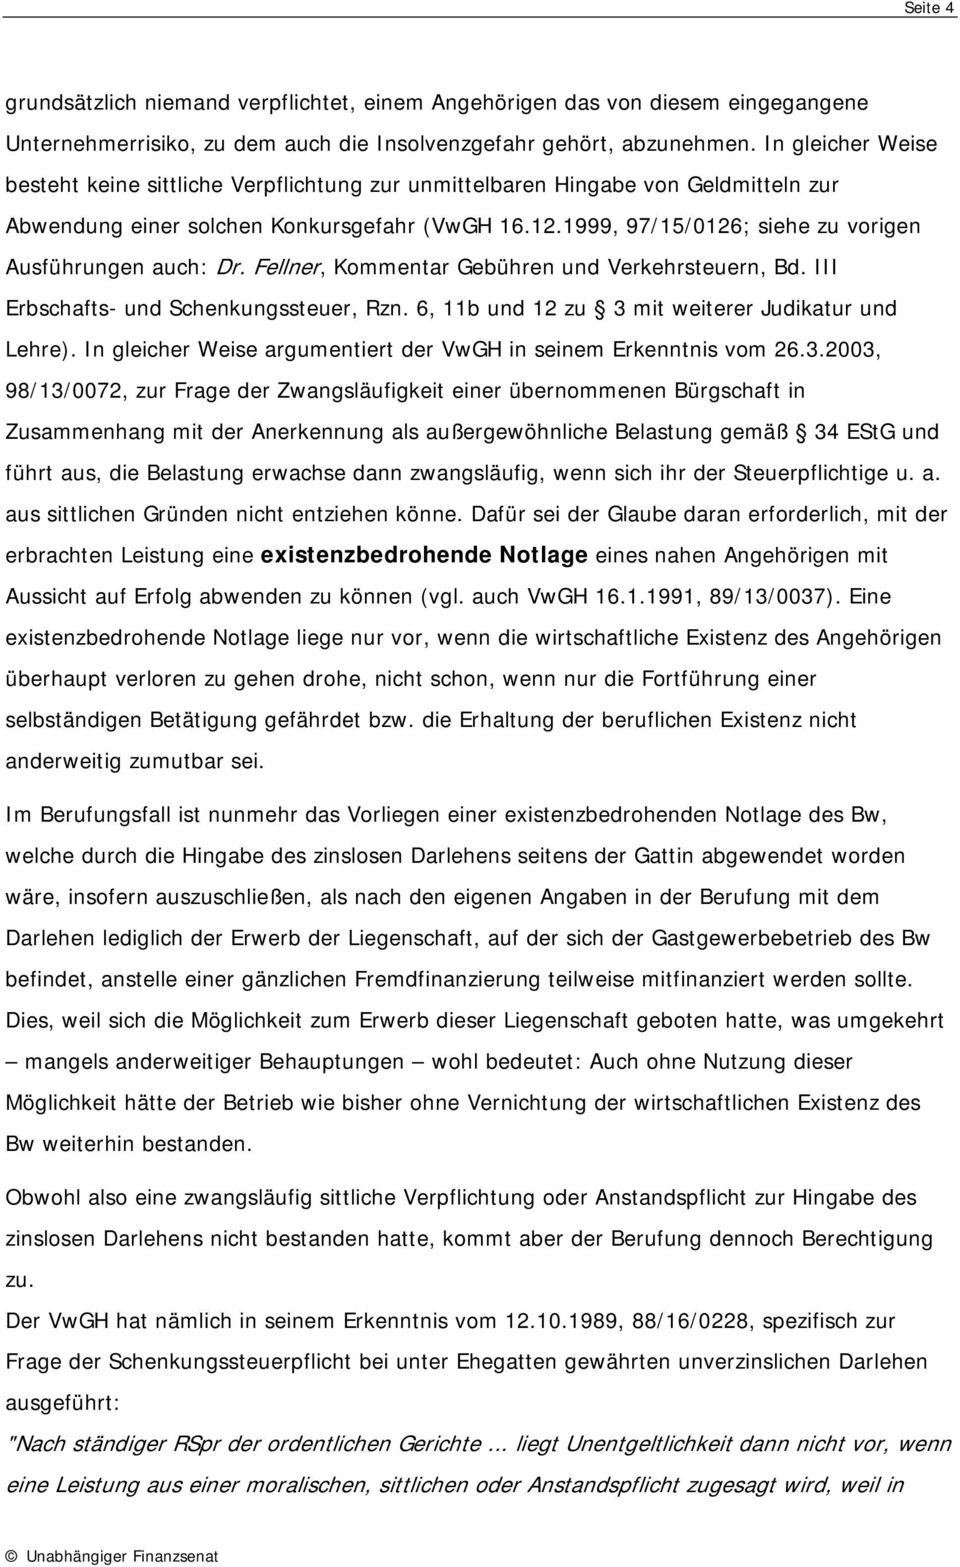 1999, 97/15/0126; siehe zu vorigen Ausführungen auch: Dr. Fellner, Kommentar Gebühren und Verkehrsteuern, Bd. III Erbschafts- und Schenkungssteuer, Rzn.